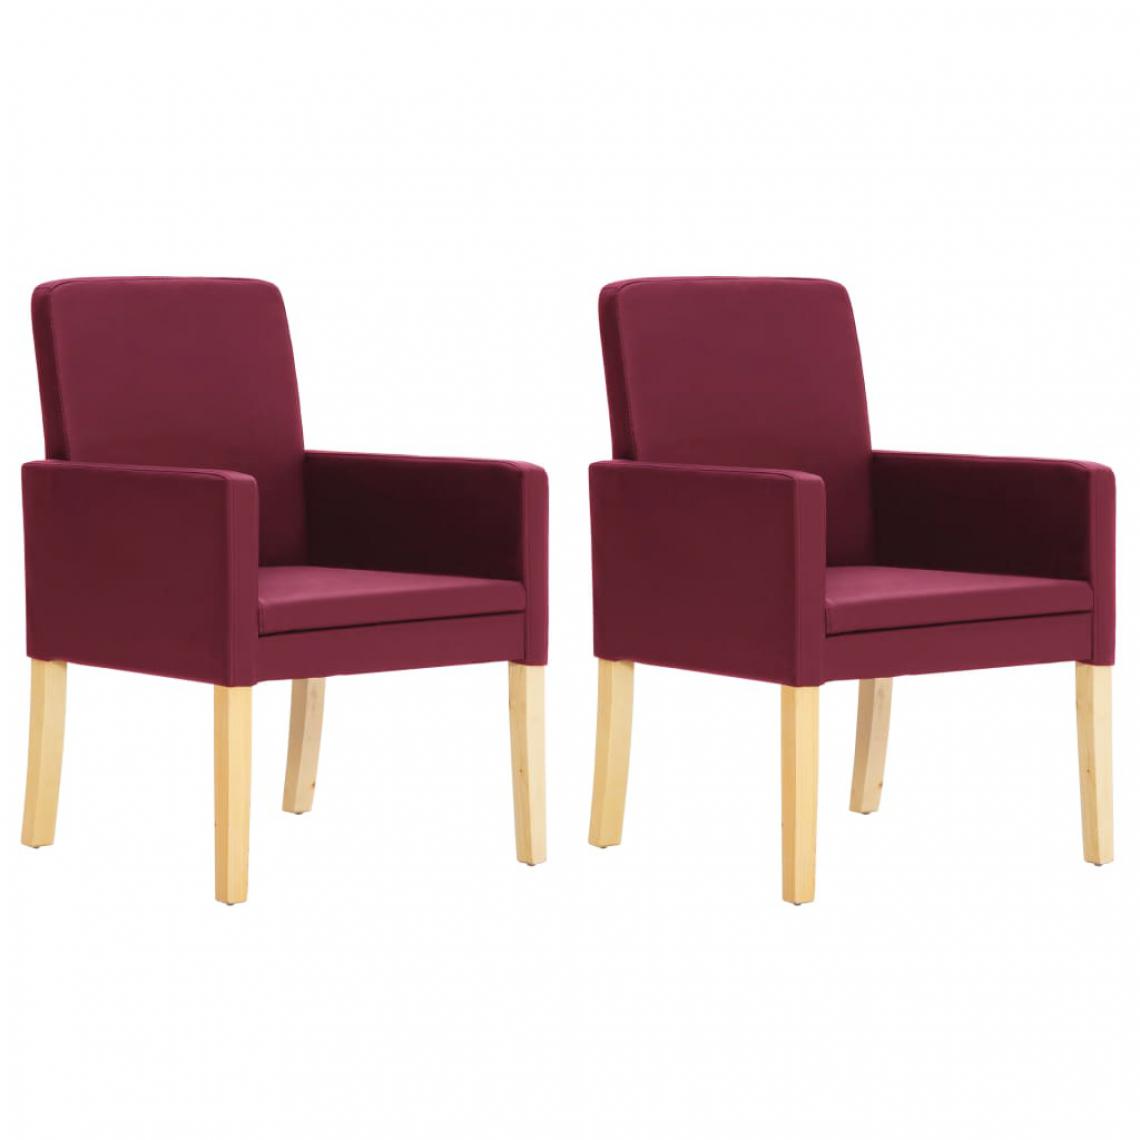 Chunhelife - Chunhelife Chaises de salle à manger 2 pcs Rouge bordeaux Similicuir - Chaises